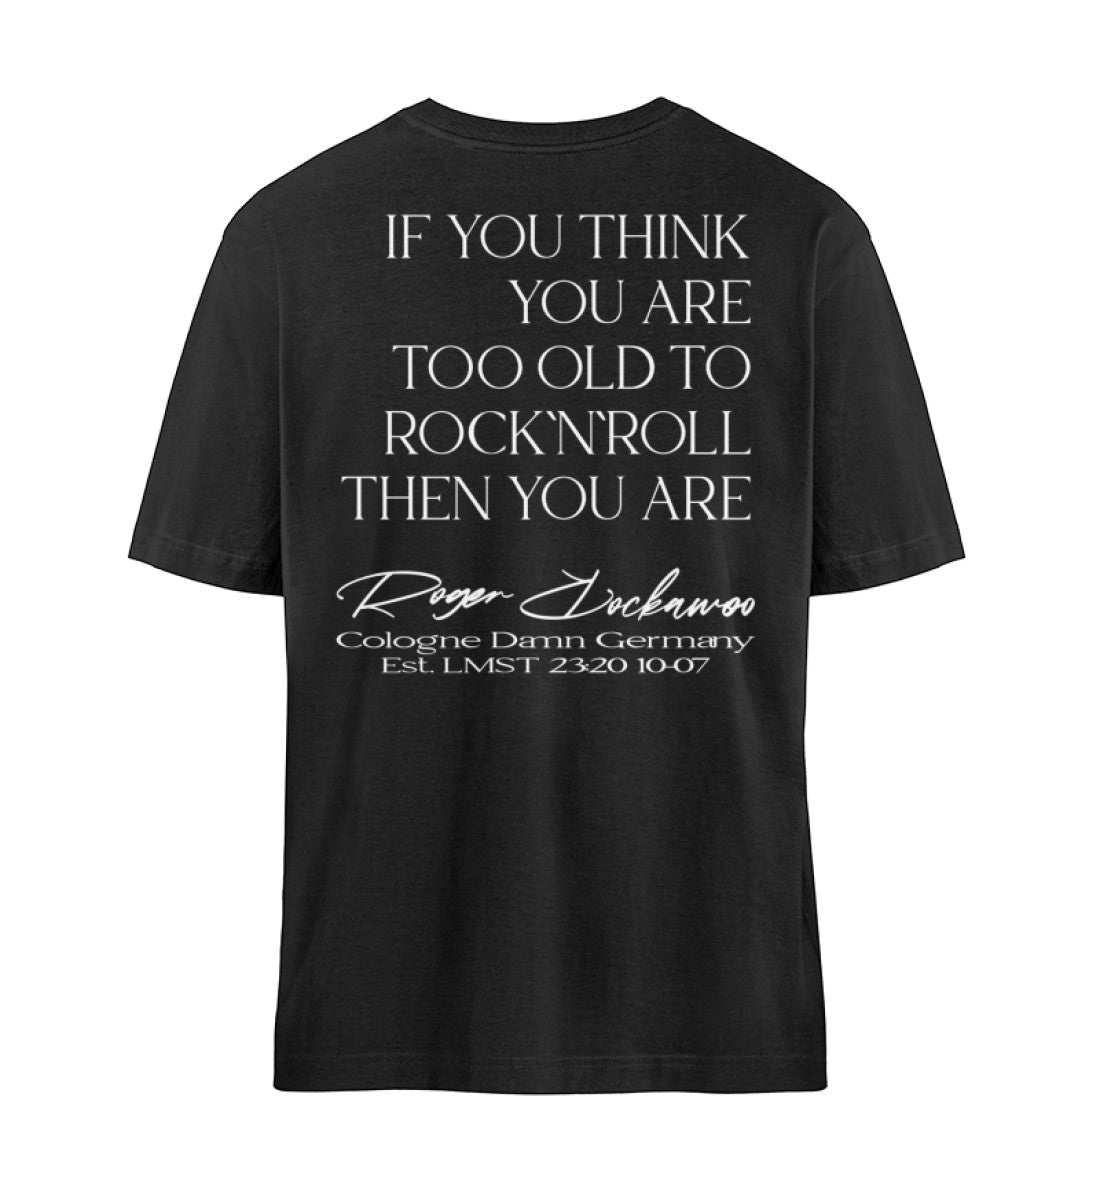 Schwarzes T-Shirt Unisex Relaxed Fit für Frauen und Männer bedruckt mit dem Design der Roger Rockawoo Kollektion Guitar too old to rocknroll